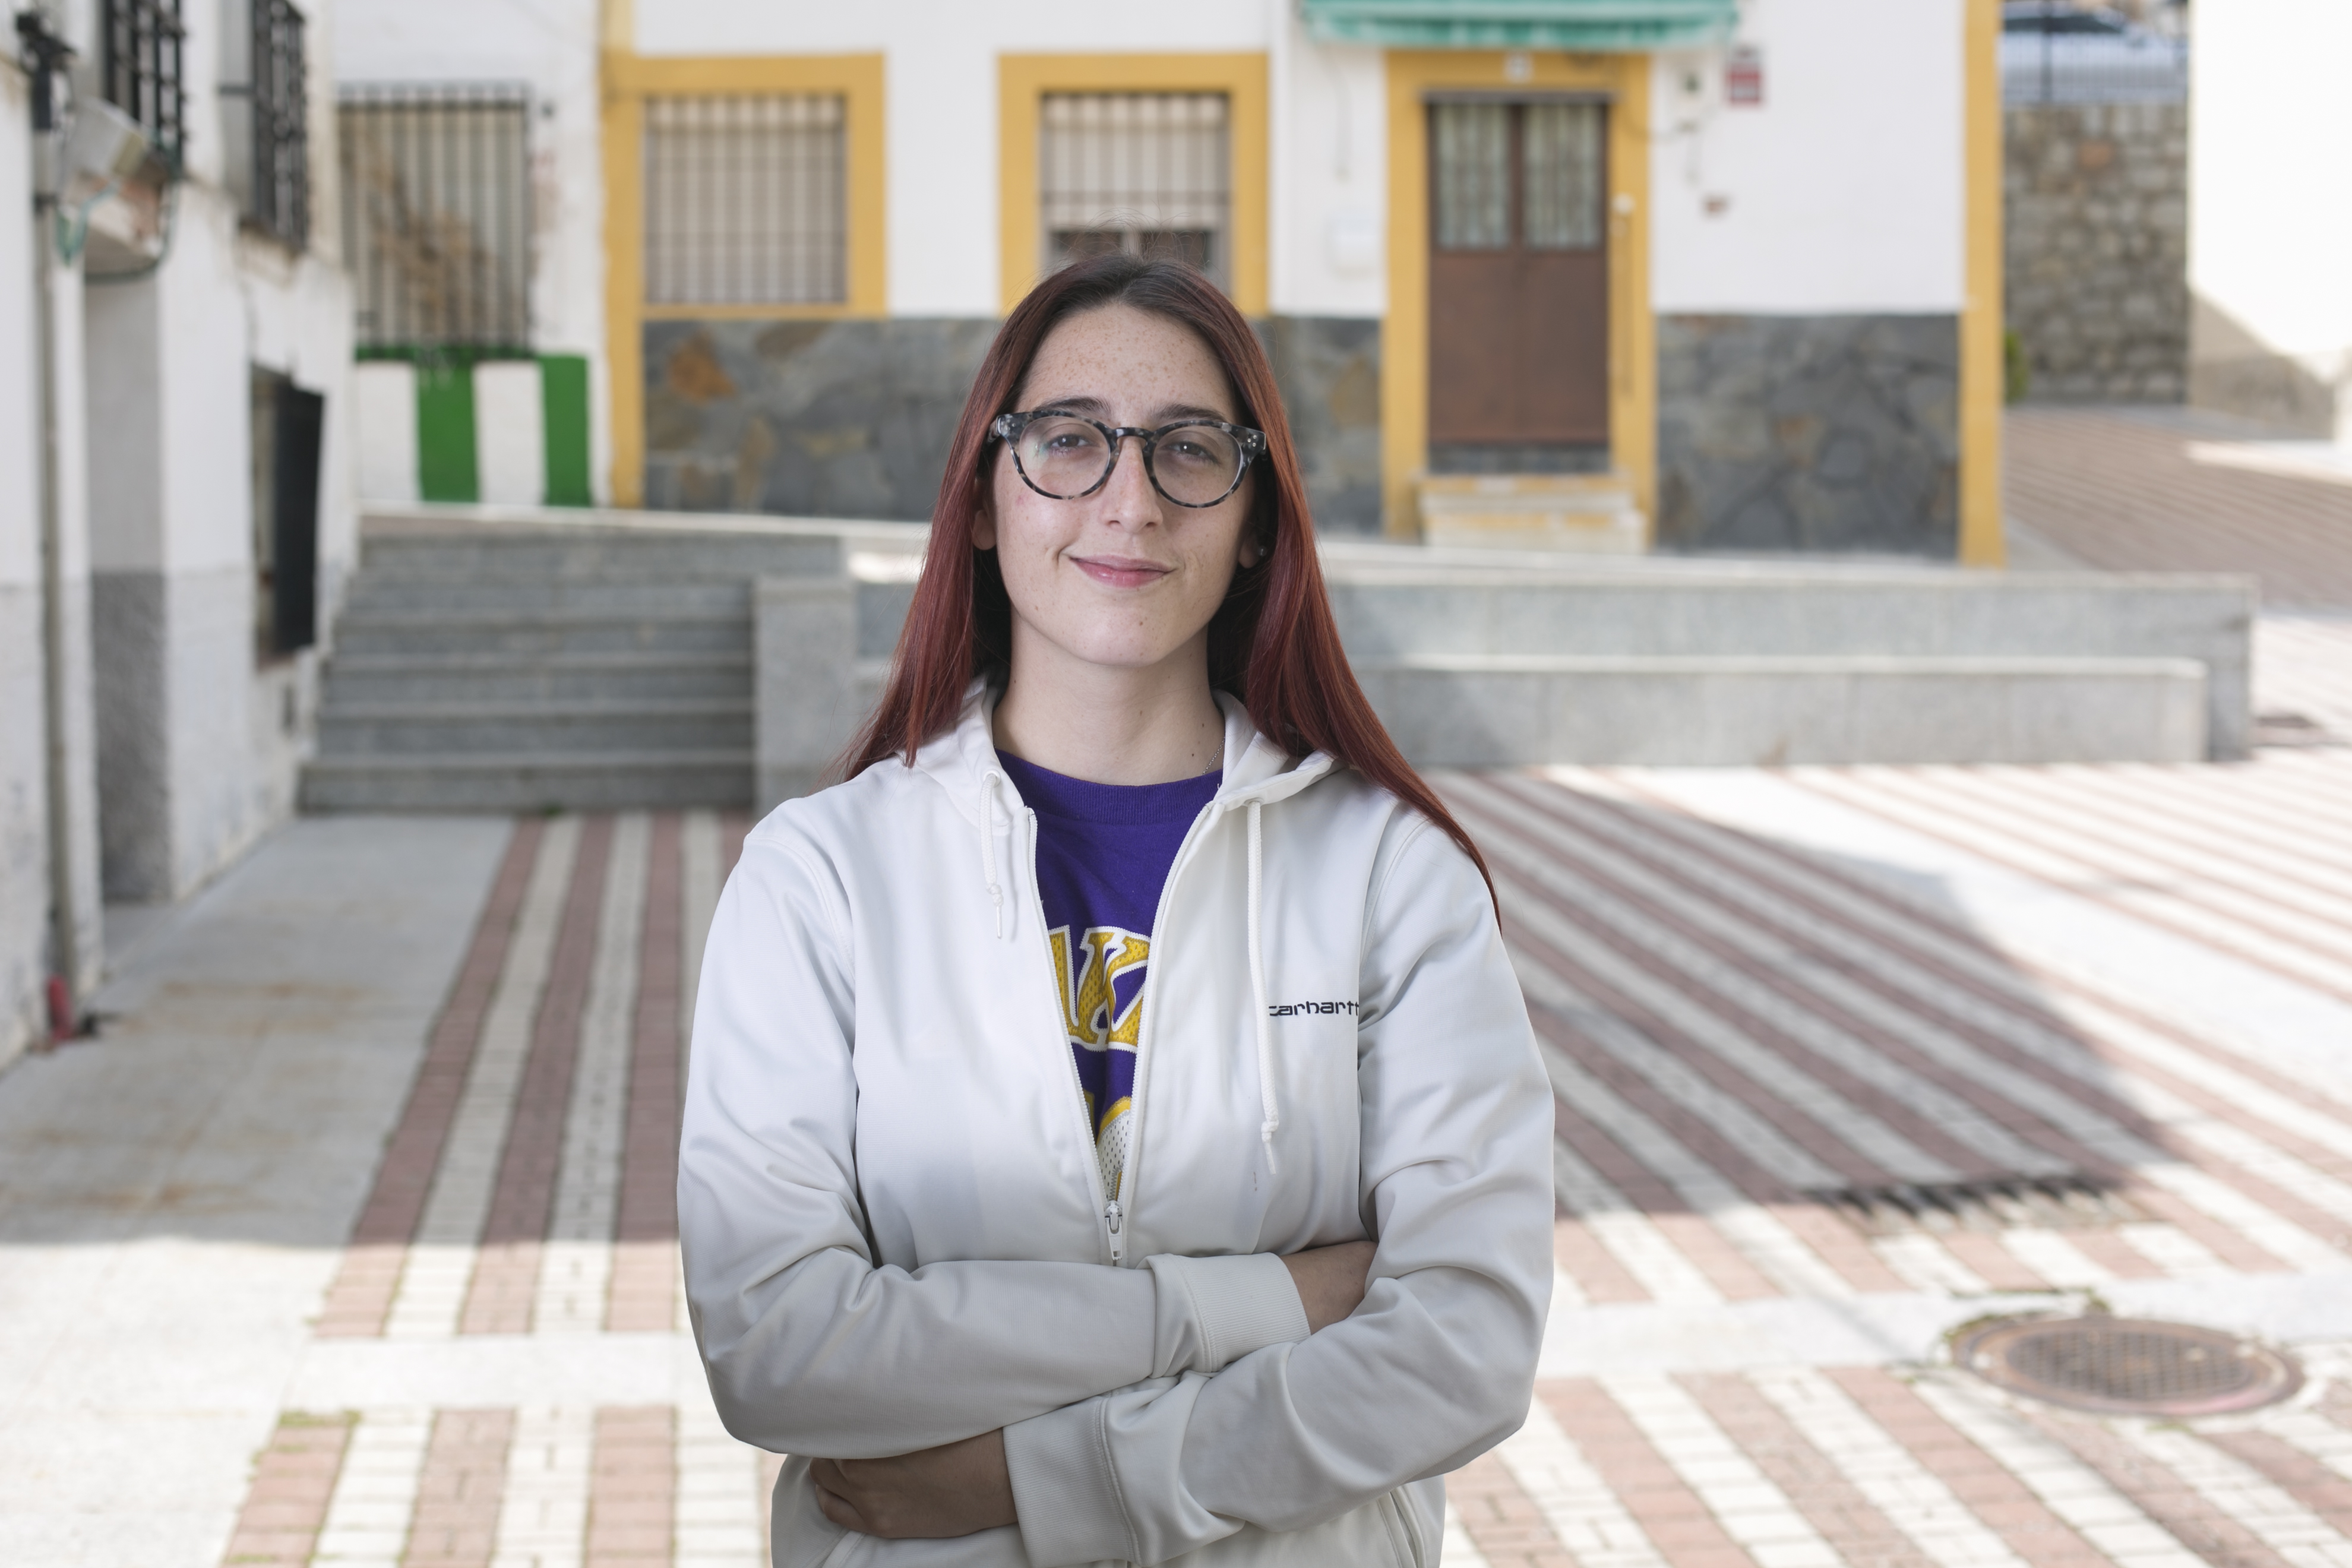 España registra un mínimo histórico en la tasa de jóvenes que ni estudian ni trabajan: “Quiero ganarme un sueldo”